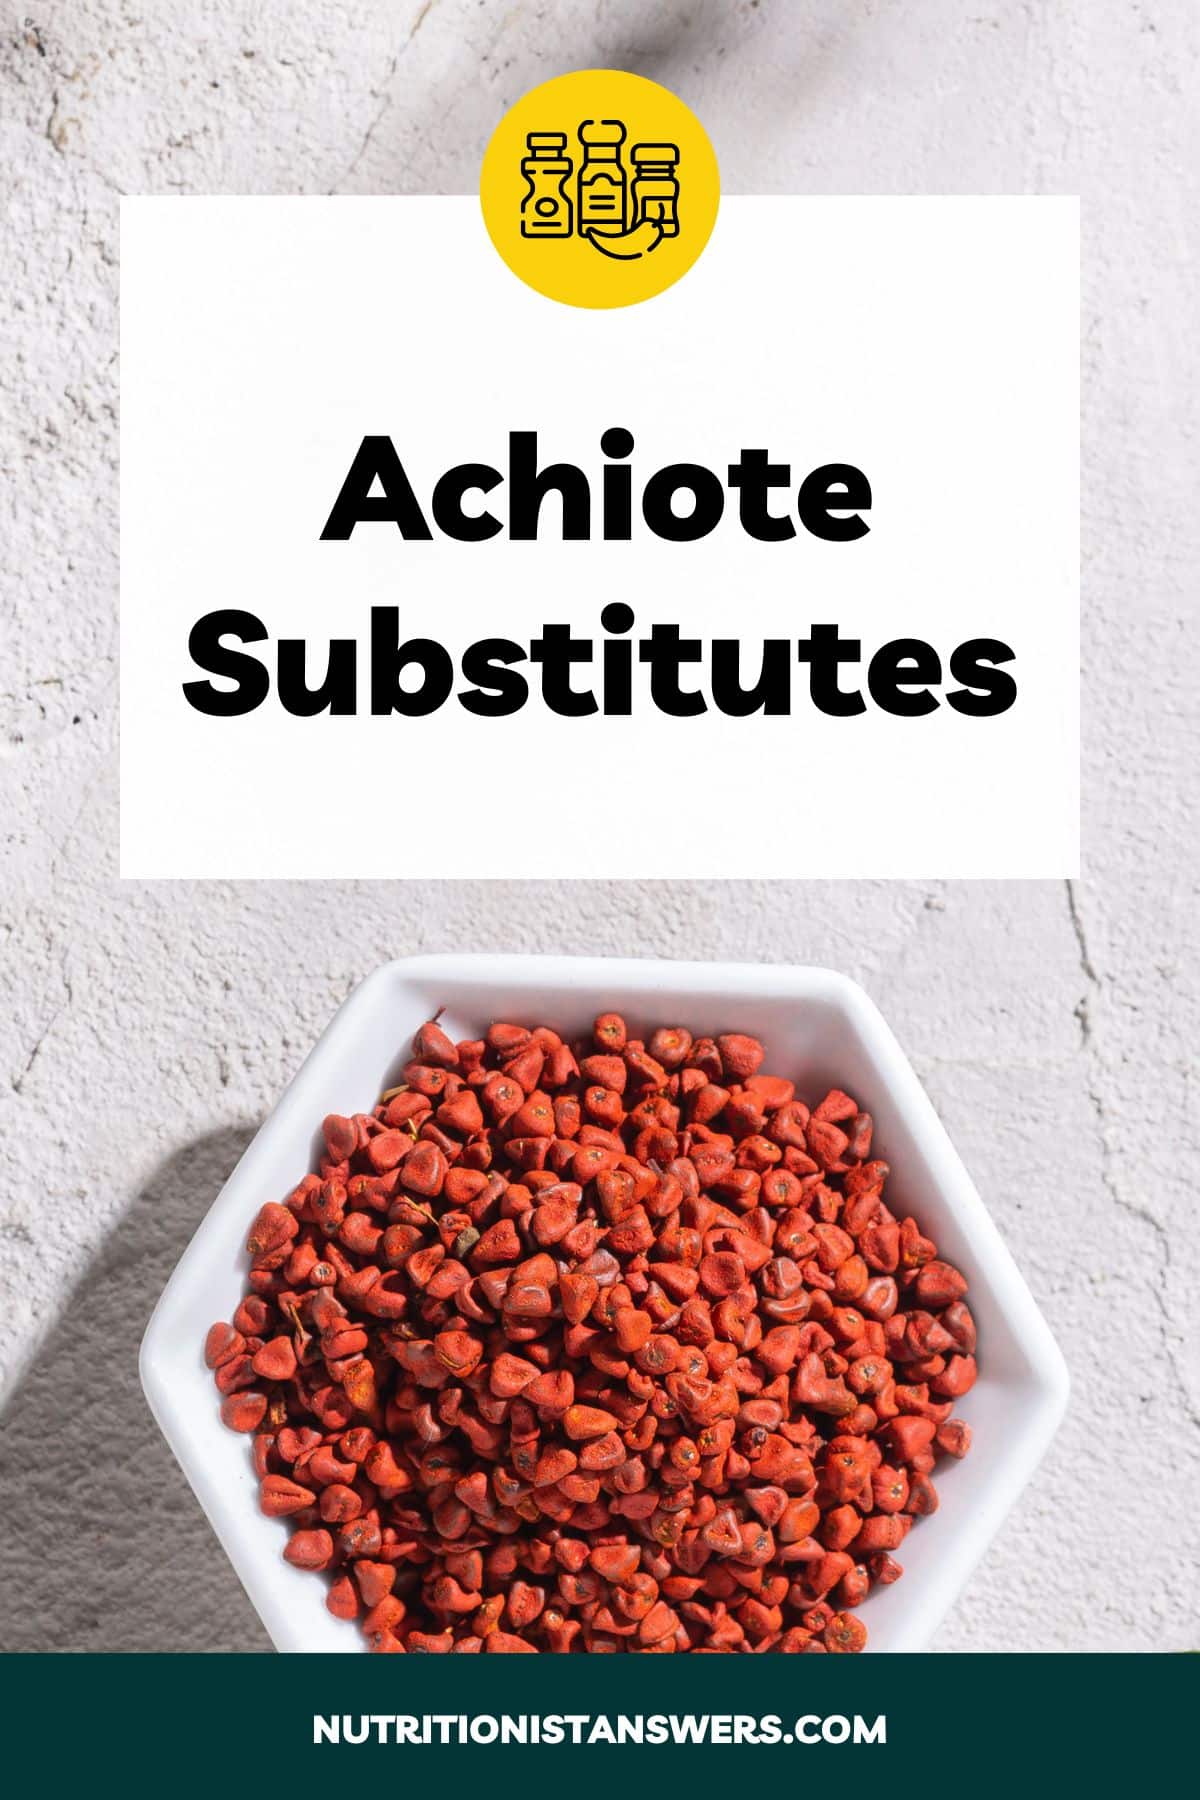 Achiote Substitutes